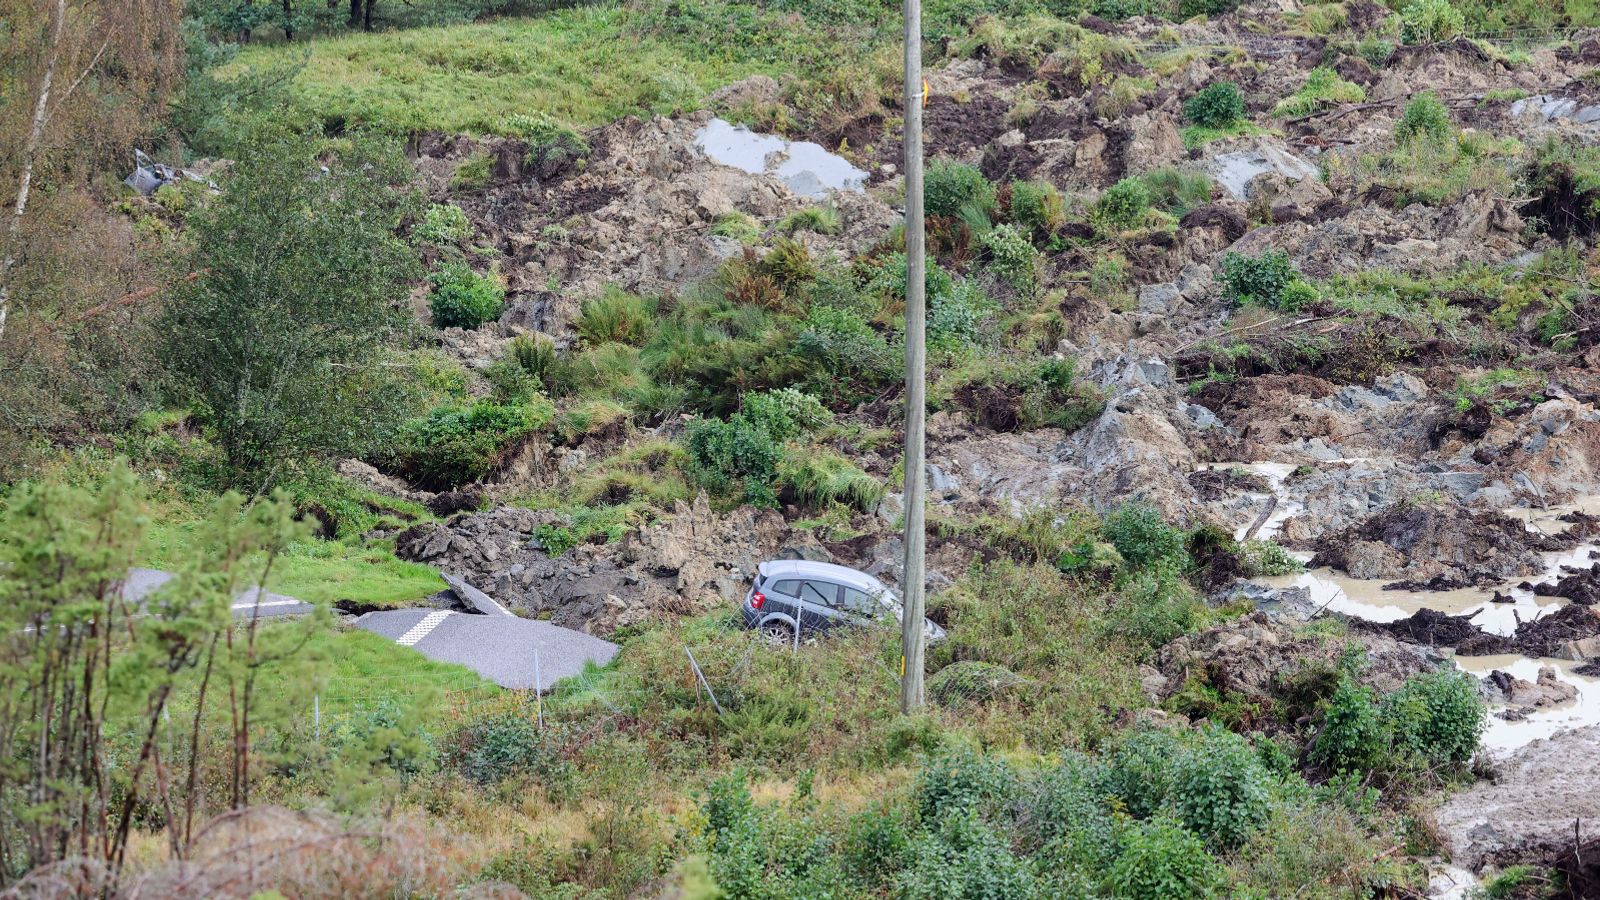 Chunk of motorway collapses in landslide - leaving three in hospital